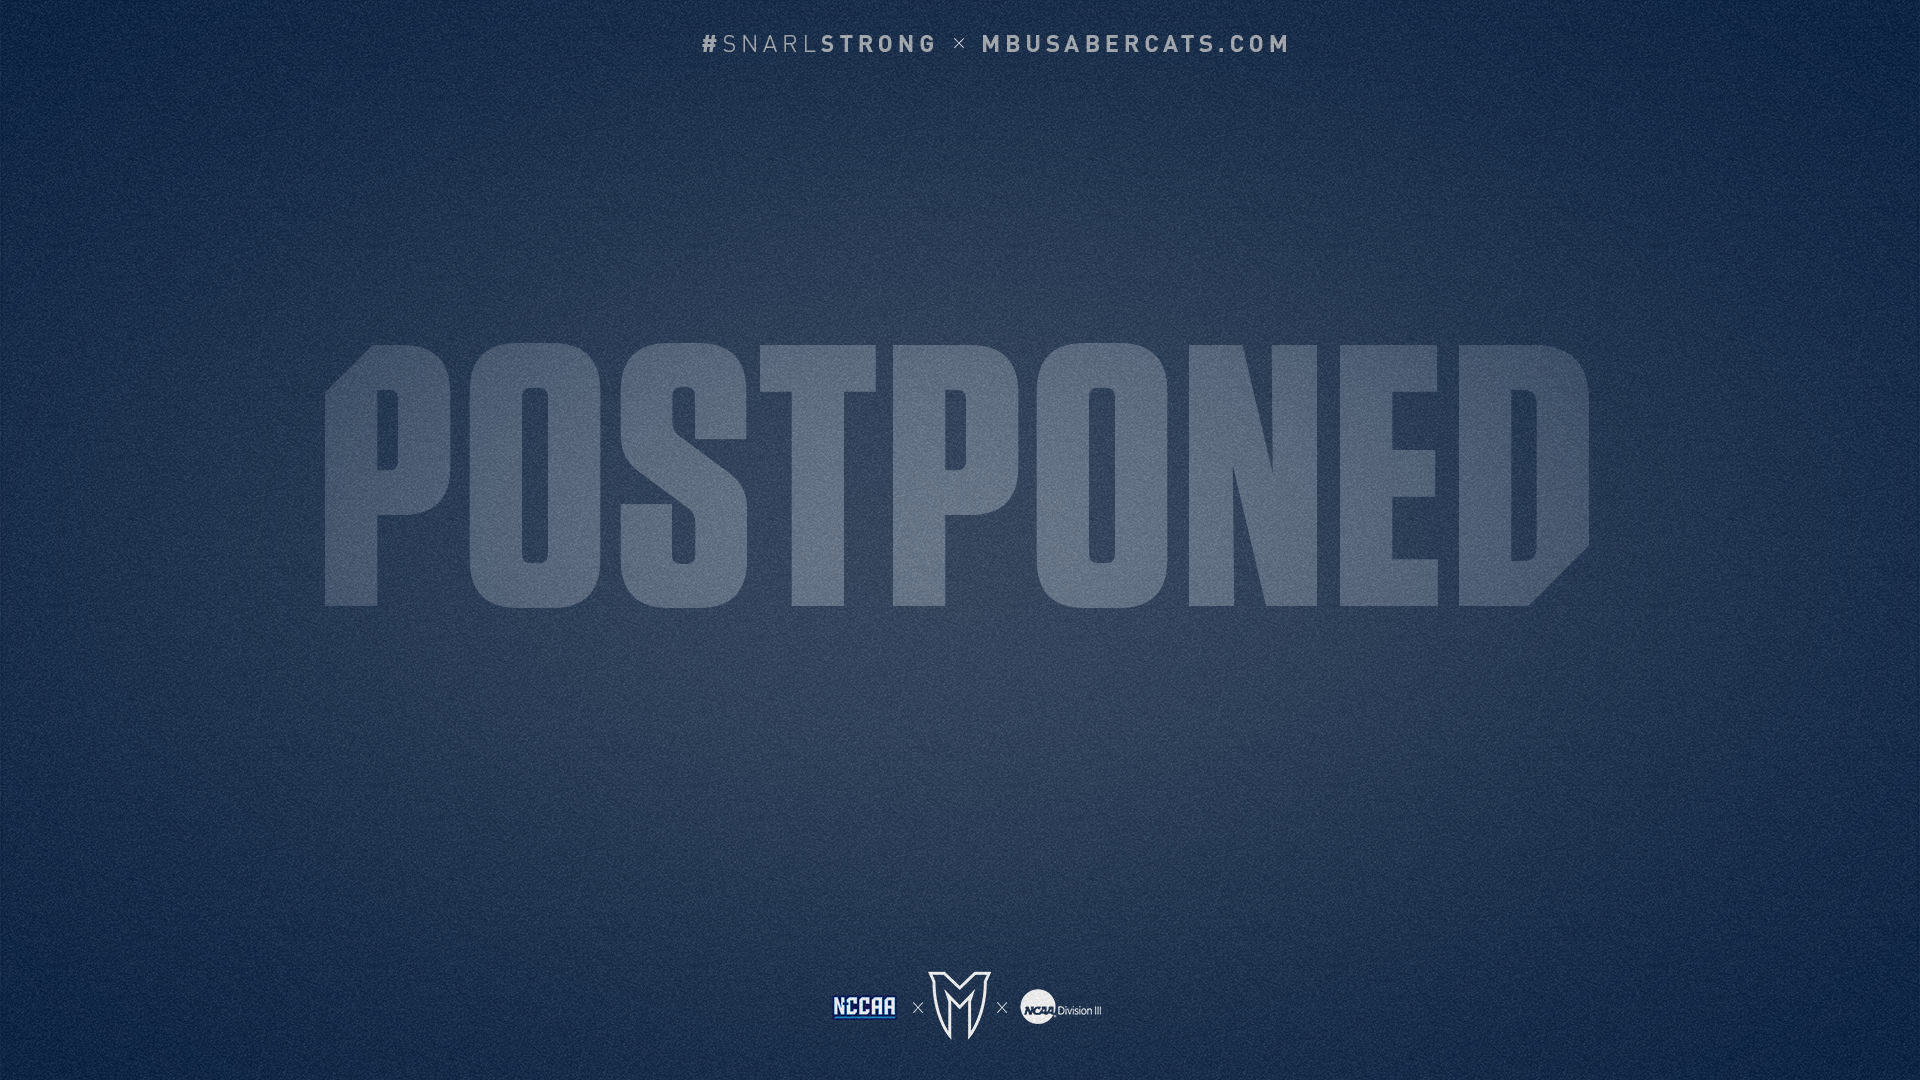 April 28 Baseball Games Postponed